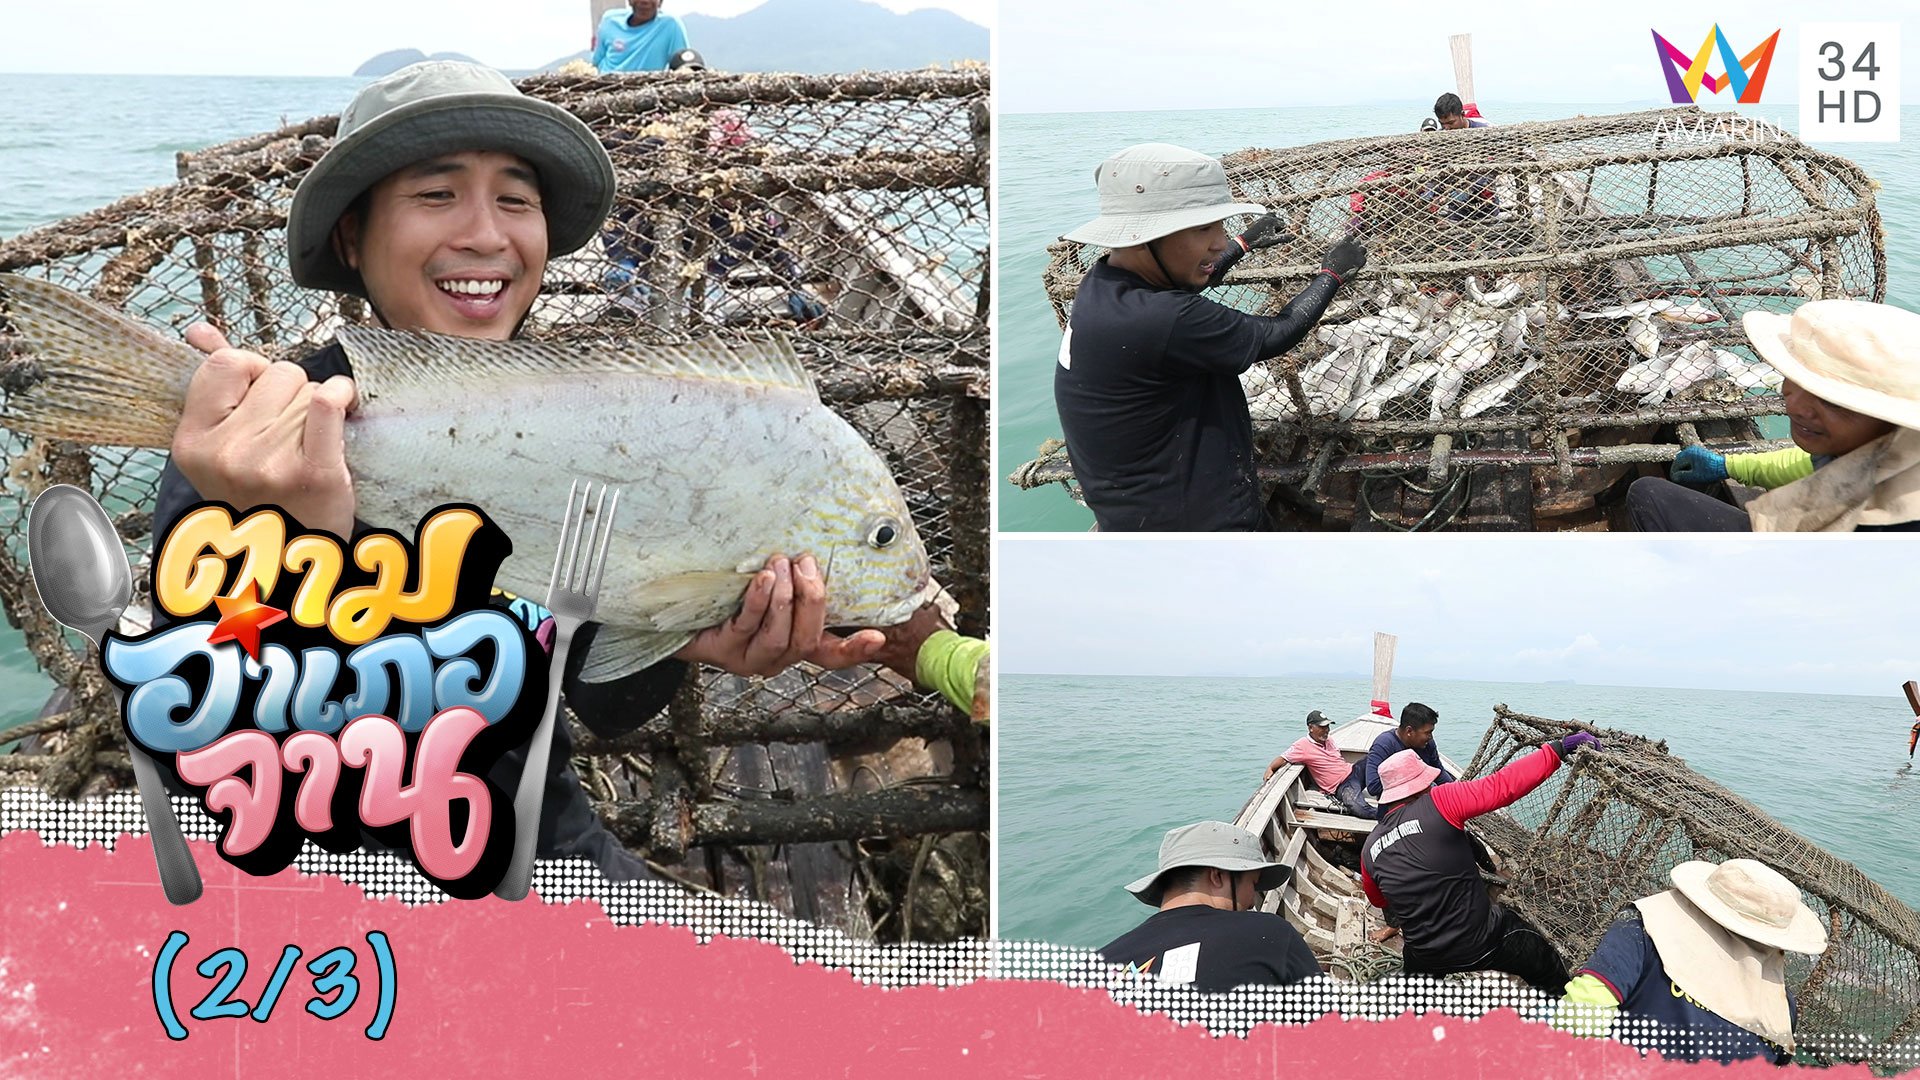 แล่นเรือโต้คลื่น! กู้ลอบปลา จ.กระบี่ | ตามอำเภอจาน | 26 ก.ย. 63 (2/3) | AMARIN TVHD34